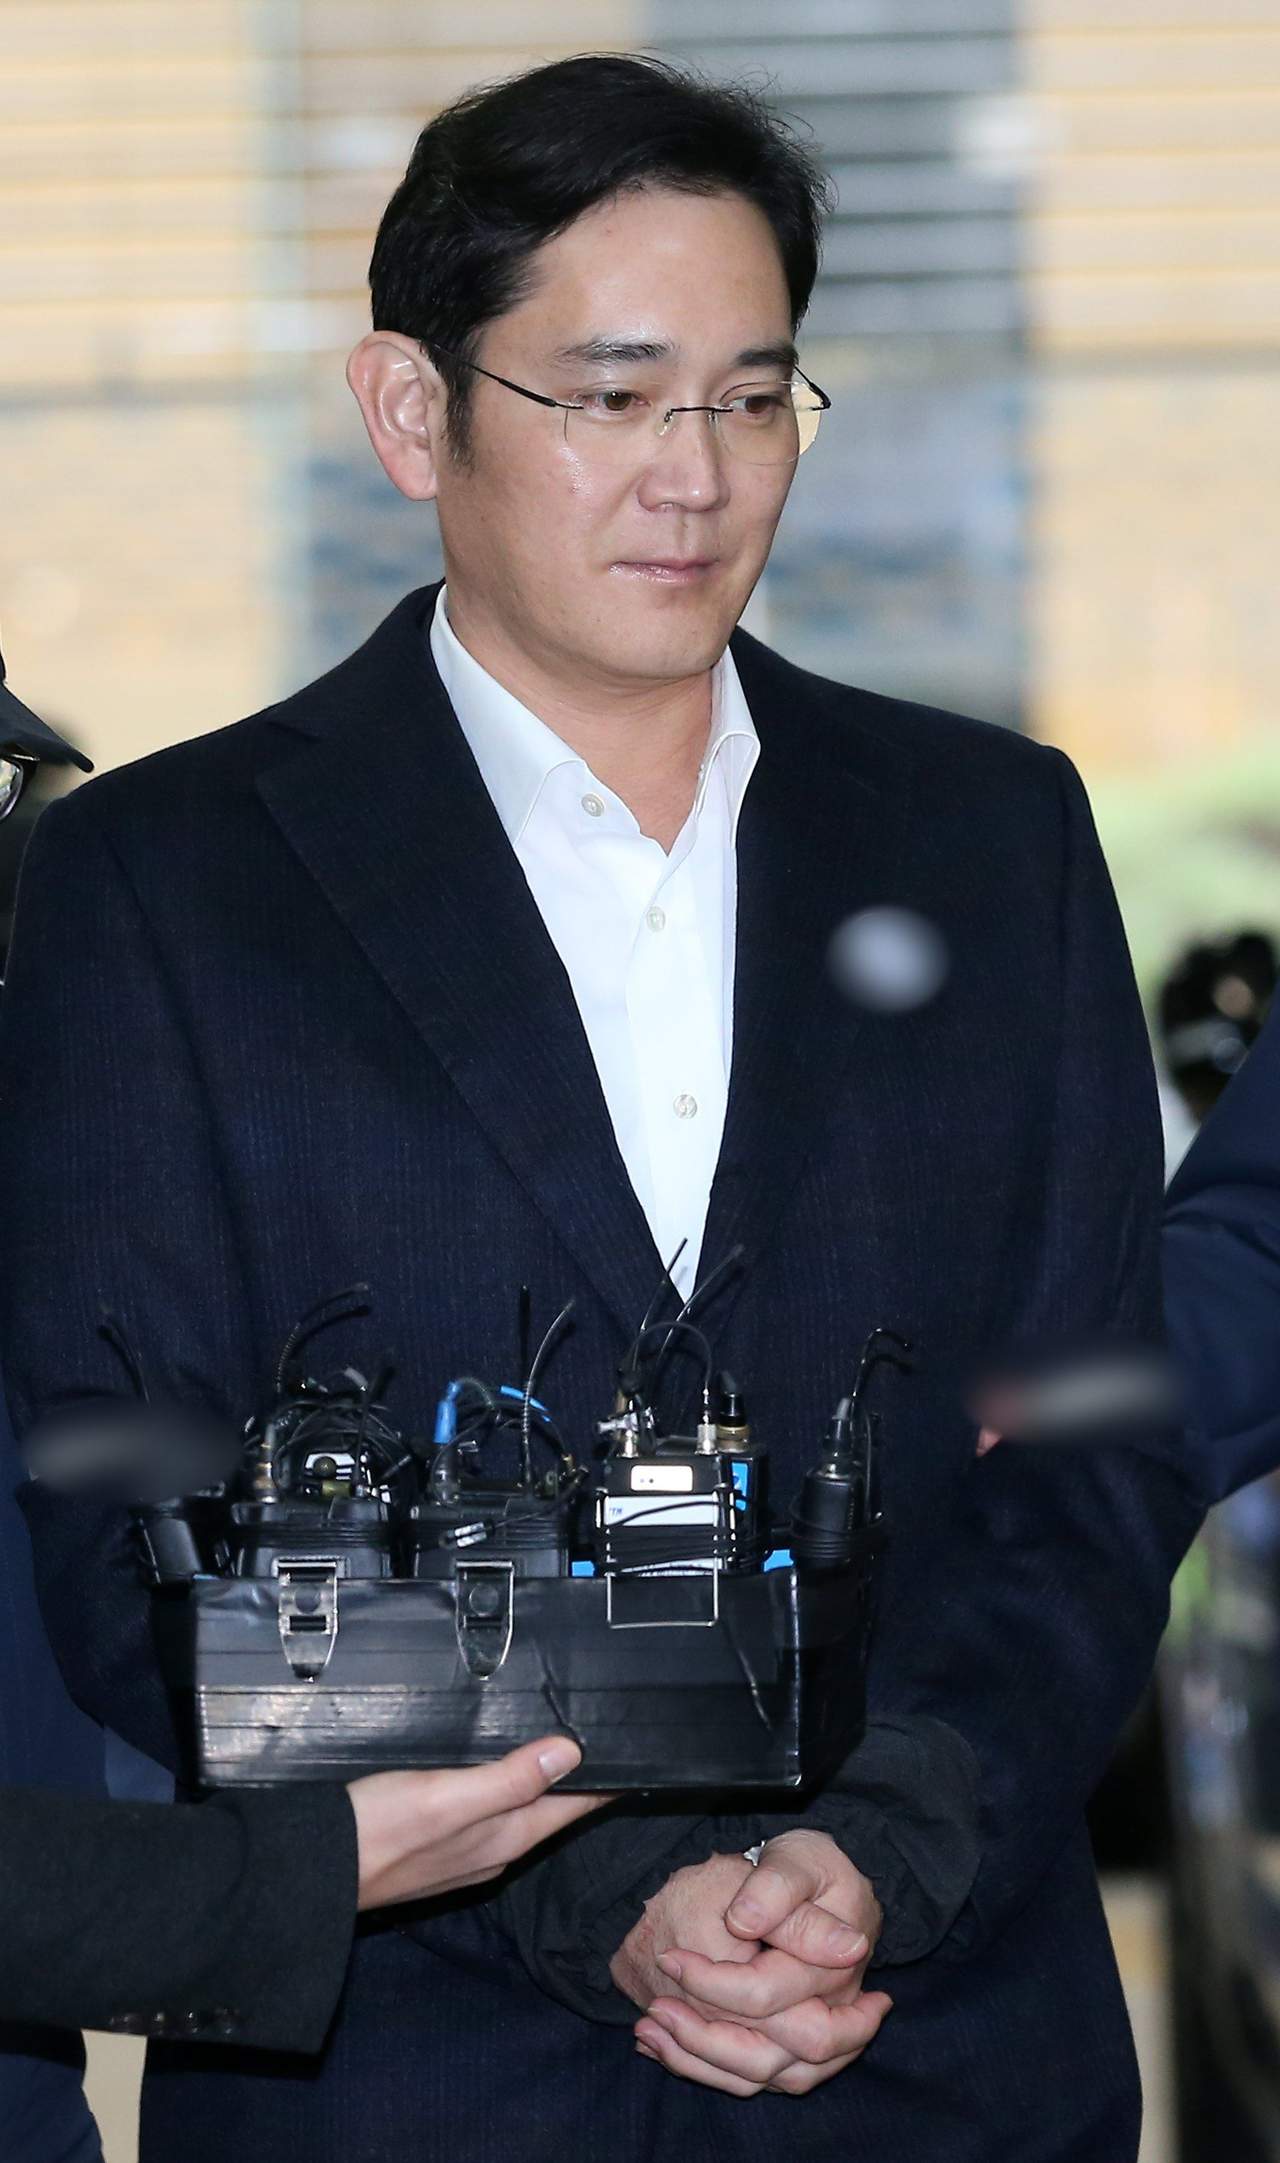 Antes de su arresto, Lee Jaeyong, era visto como innovador